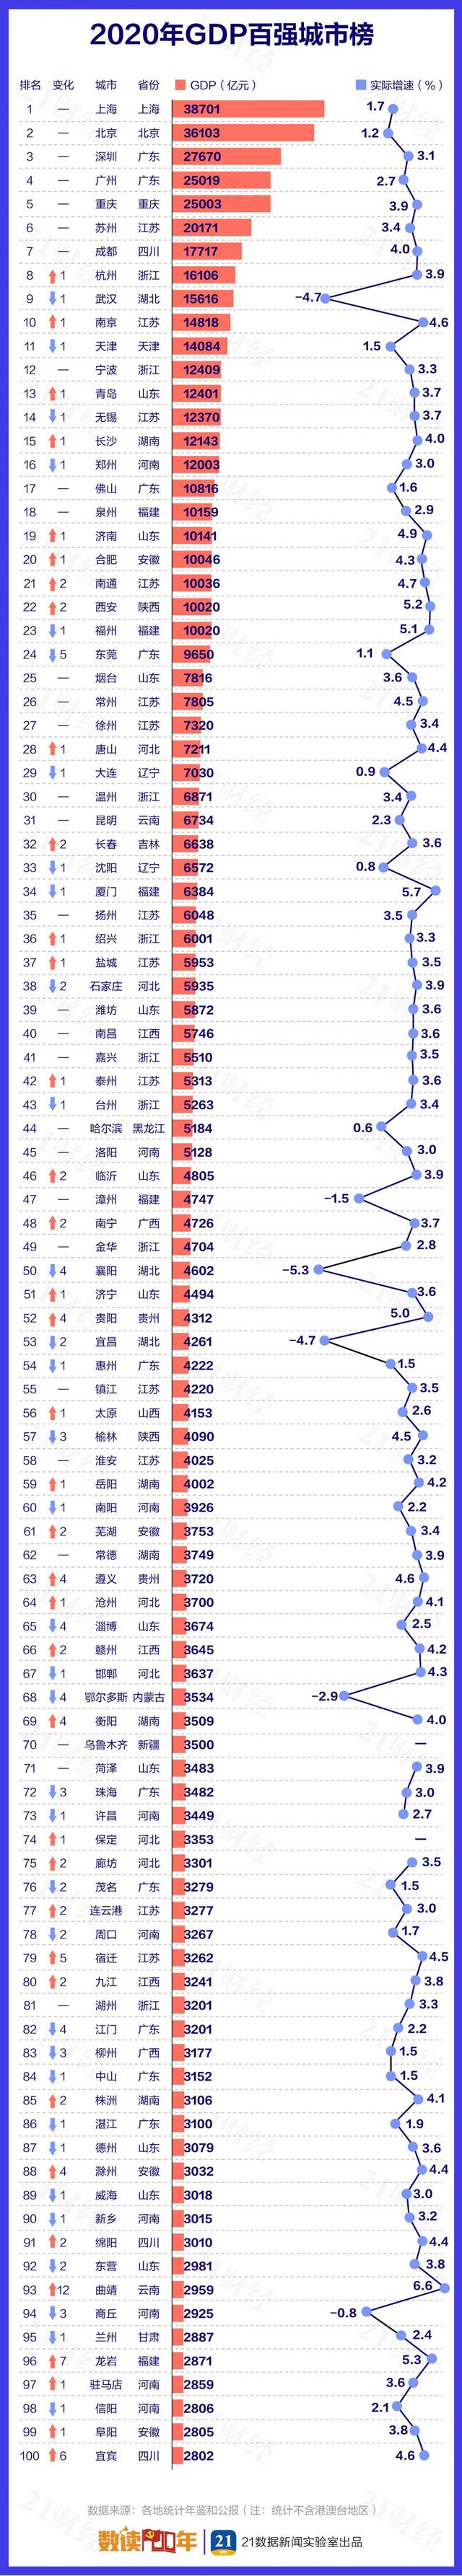 2020中国城市GDP百强榜